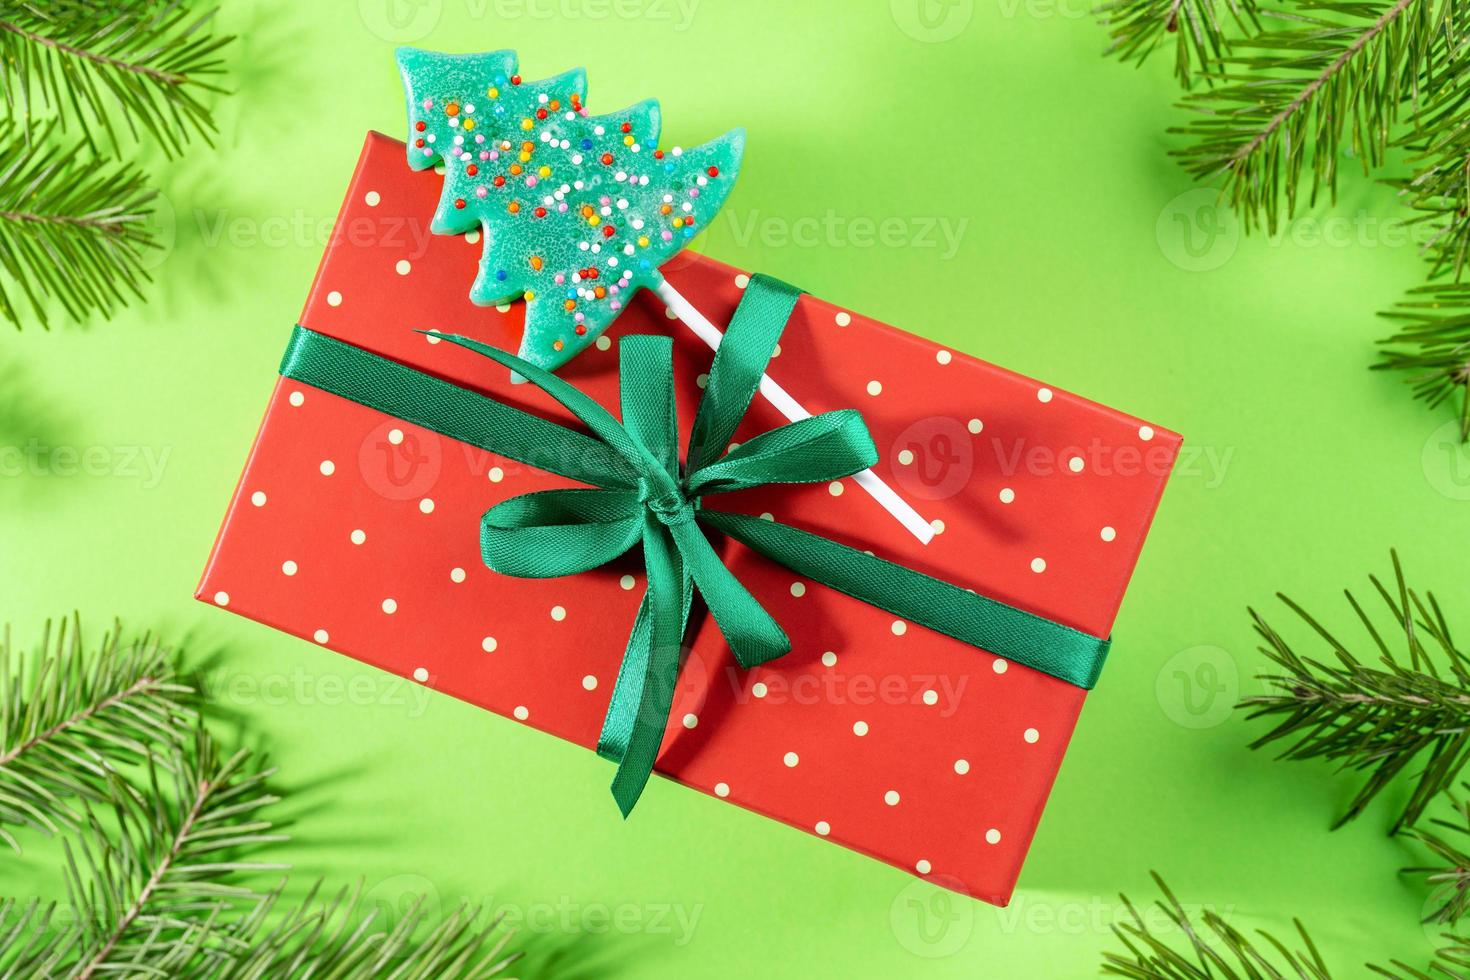 caja envuelta roja en lunares decorada con cinta verde, lazo y piruleta como árbol de navidad en verde. foto